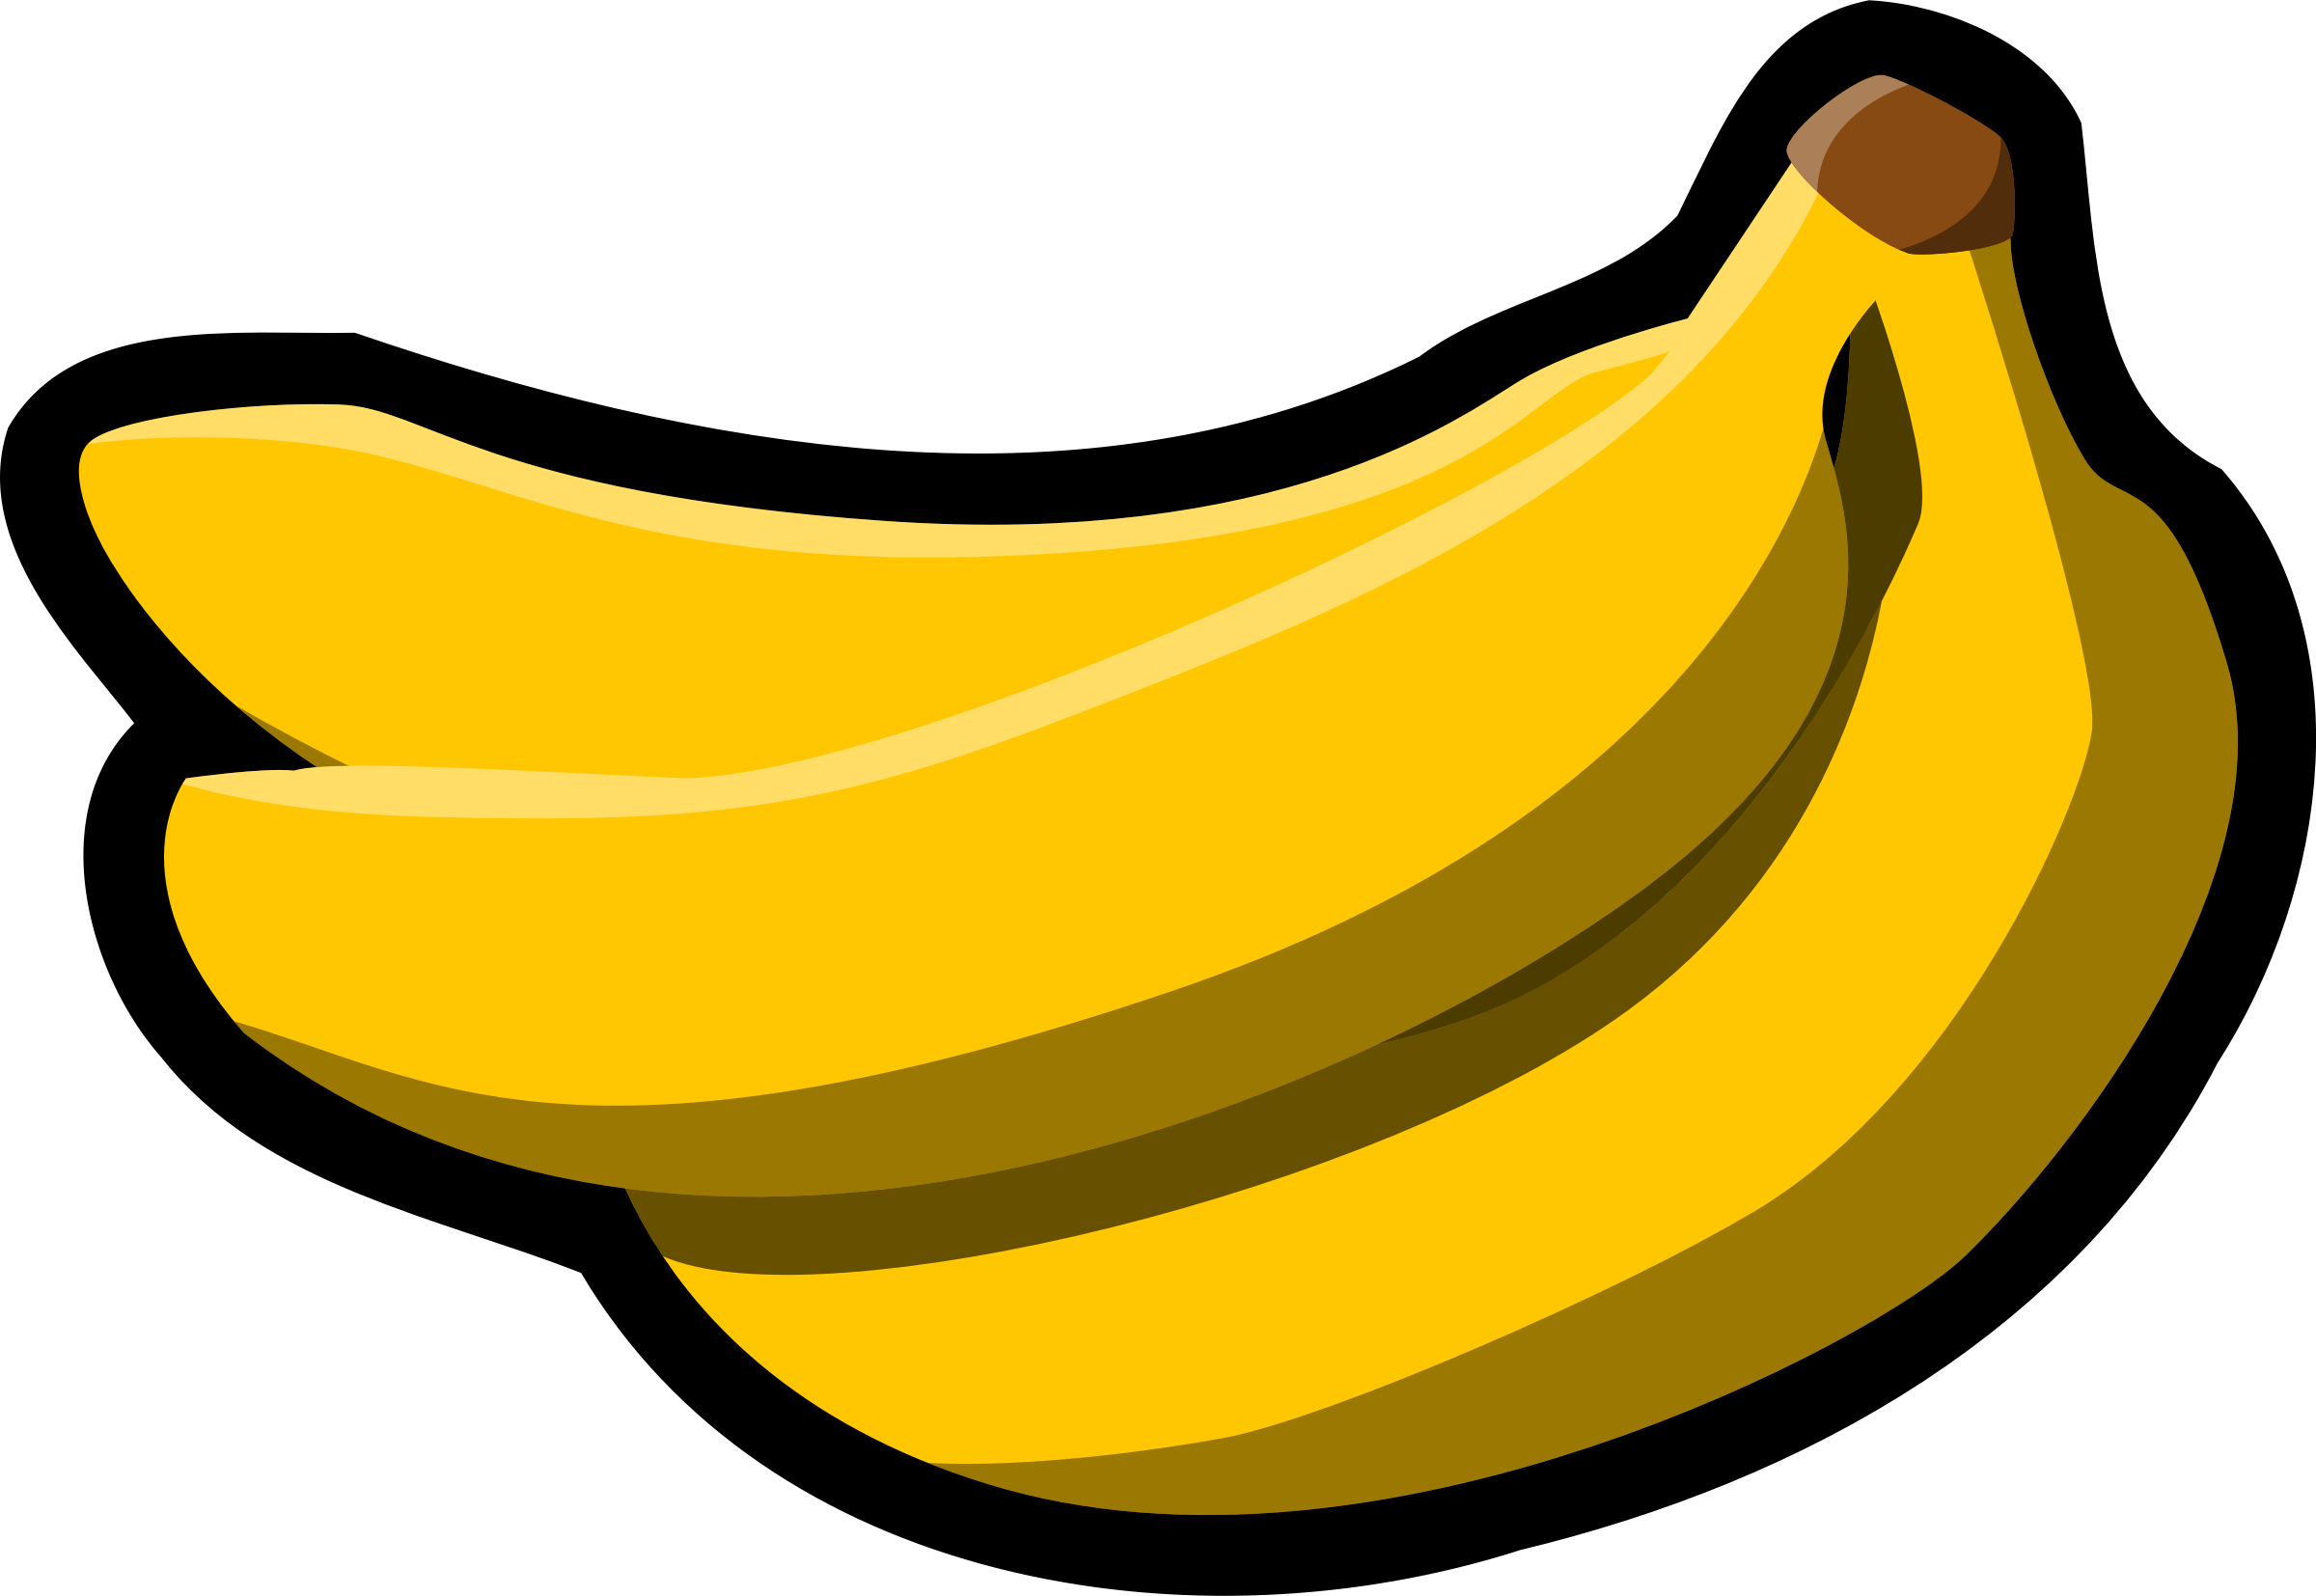 Clipart banana plantain. Bananas big image png